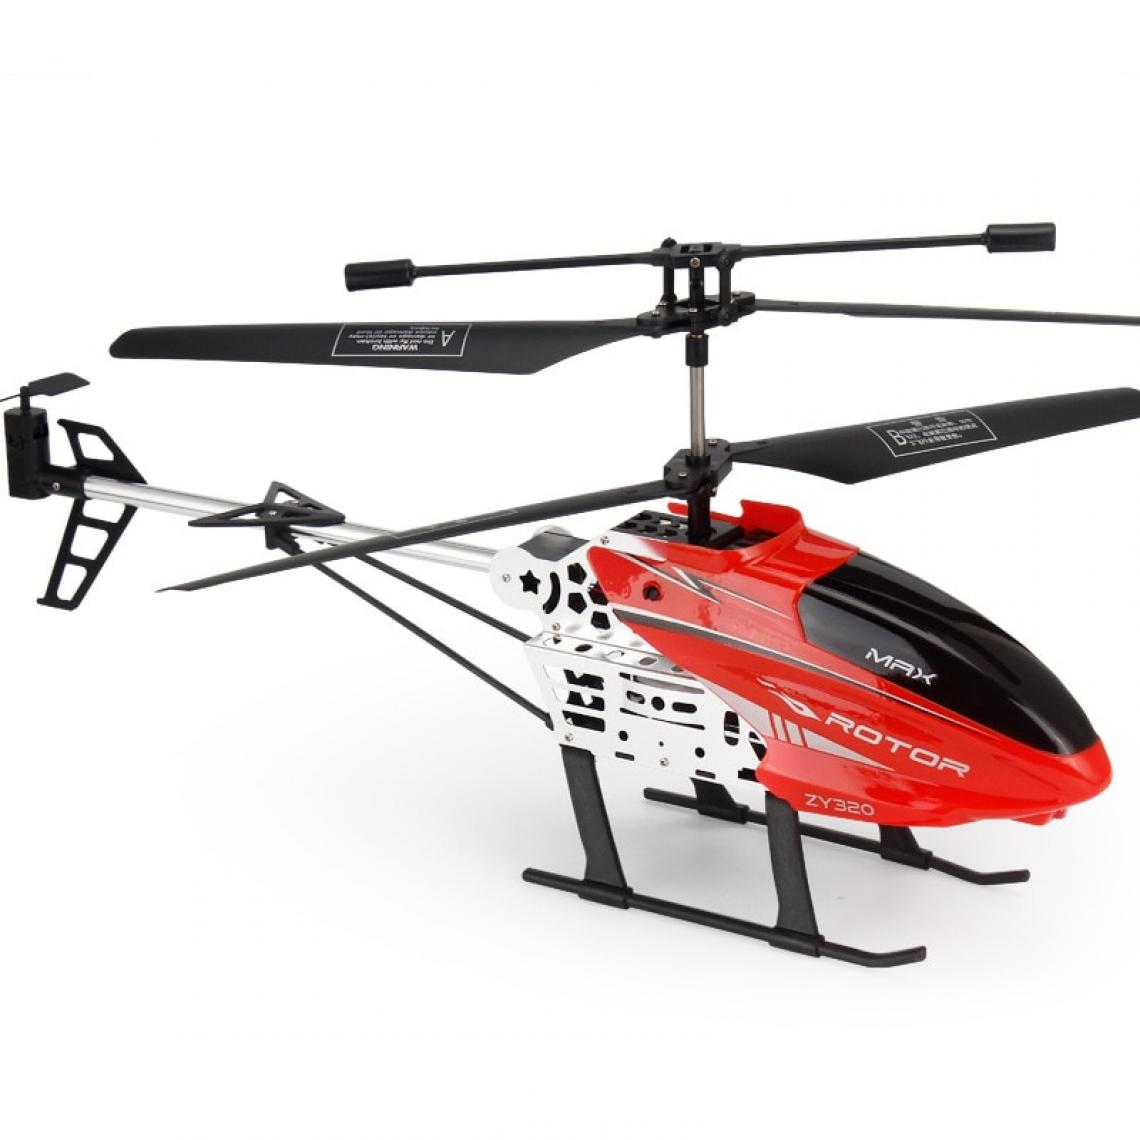 Universal - Nouveaux hélicoptères RC de grande taille de 40cm 2.4G avec lumières LED radiocommandées RC drones fixes hauteur durable alliage ABS gros jouets d'avion(Rouge) - Drone